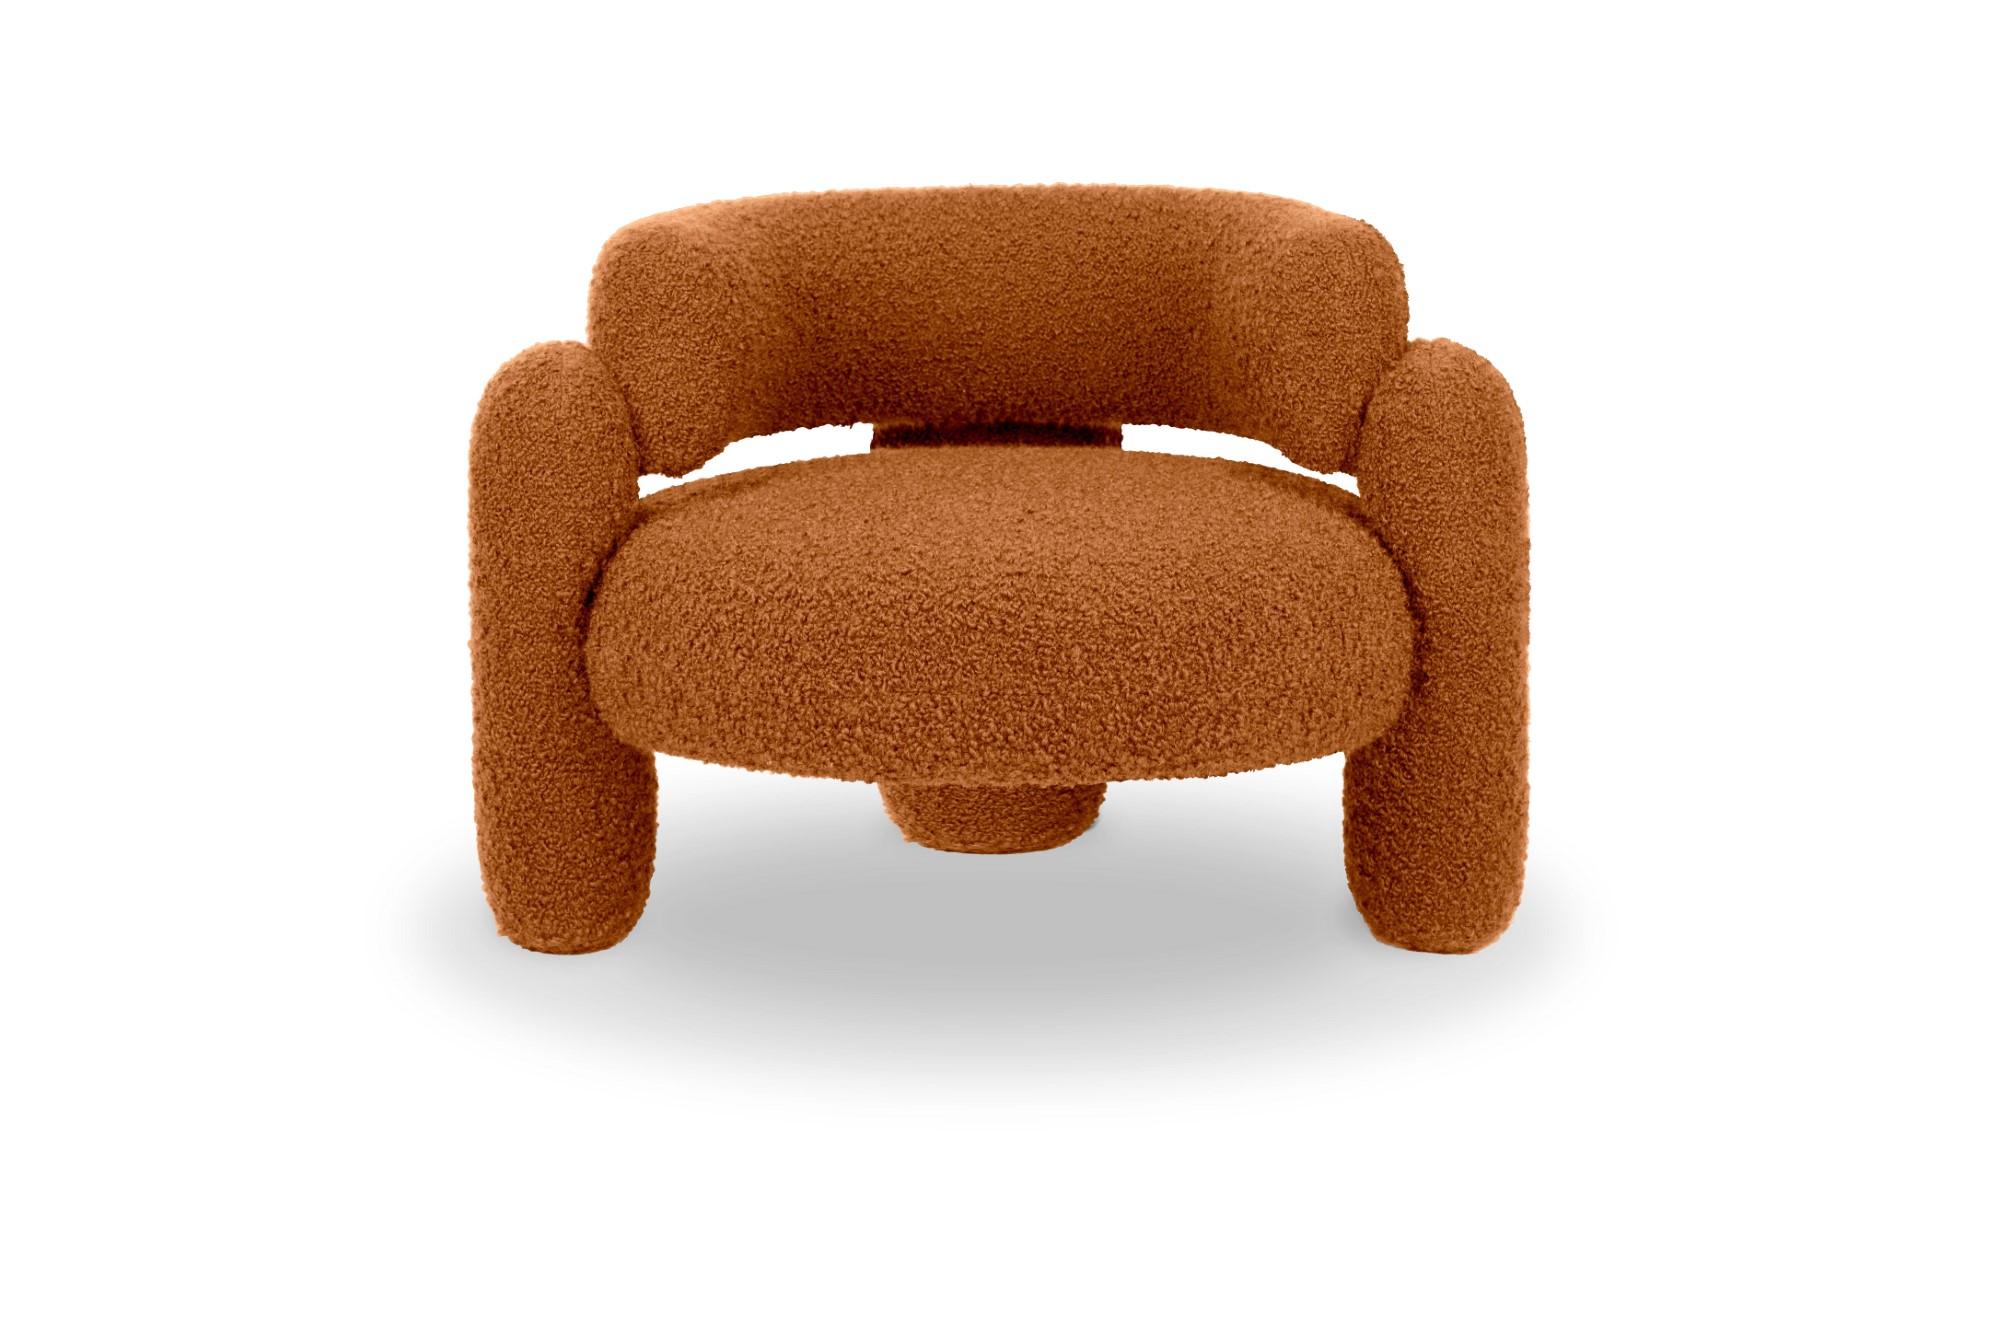 Embrace Cormo Kaki-Sessel von Royal Stranger
Abmessungen: B 96 x T 85 x H 68 cm.
Es sind verschiedene Farben und Ausführungen der Polsterung erhältlich.
MATERIALIEN: Polstermöbel.

Der Embrace Armchair ist eine Komposition aus geometrischen Formen,